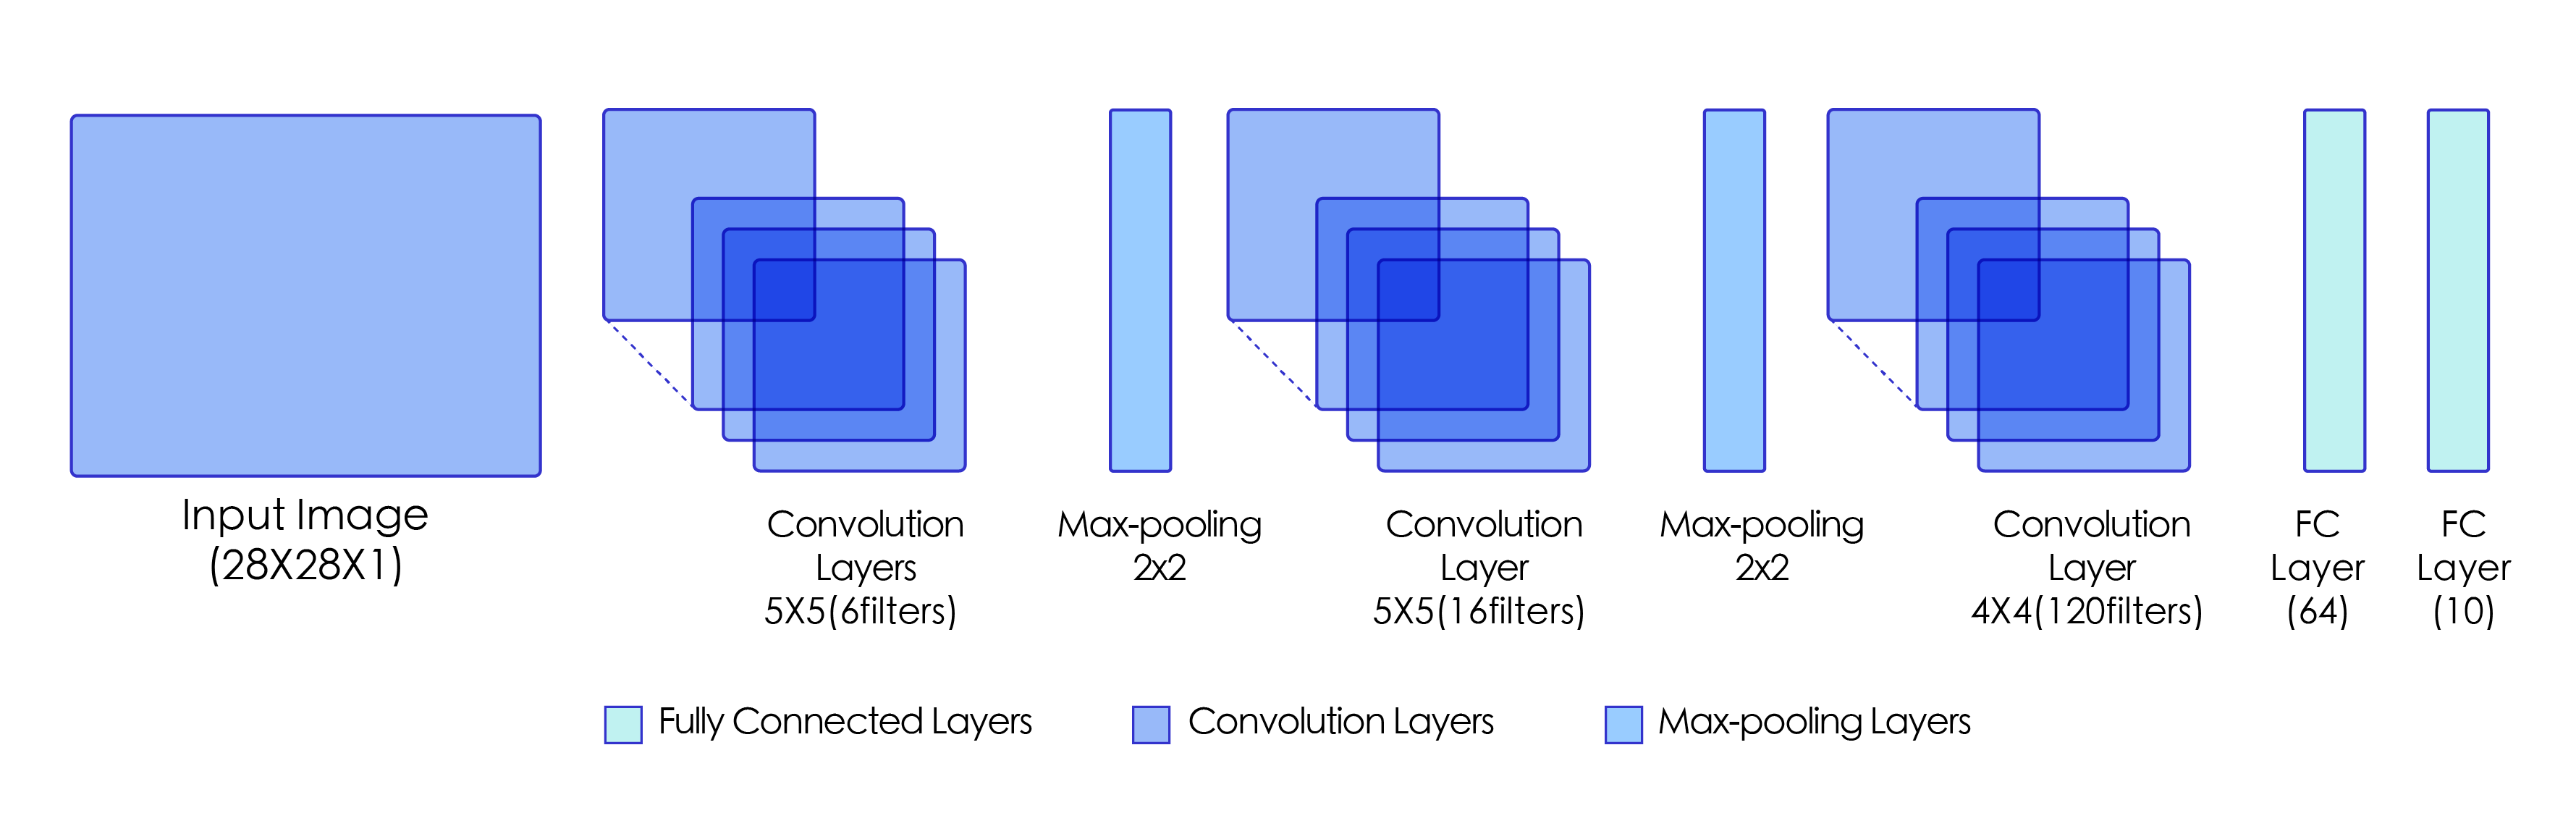 深度学习应用篇-计算机视觉-图像分类[2]：LeNet、AlexNet、VGG、GoogleNet、DarkNet模型结构、实现、模型特点详细介绍